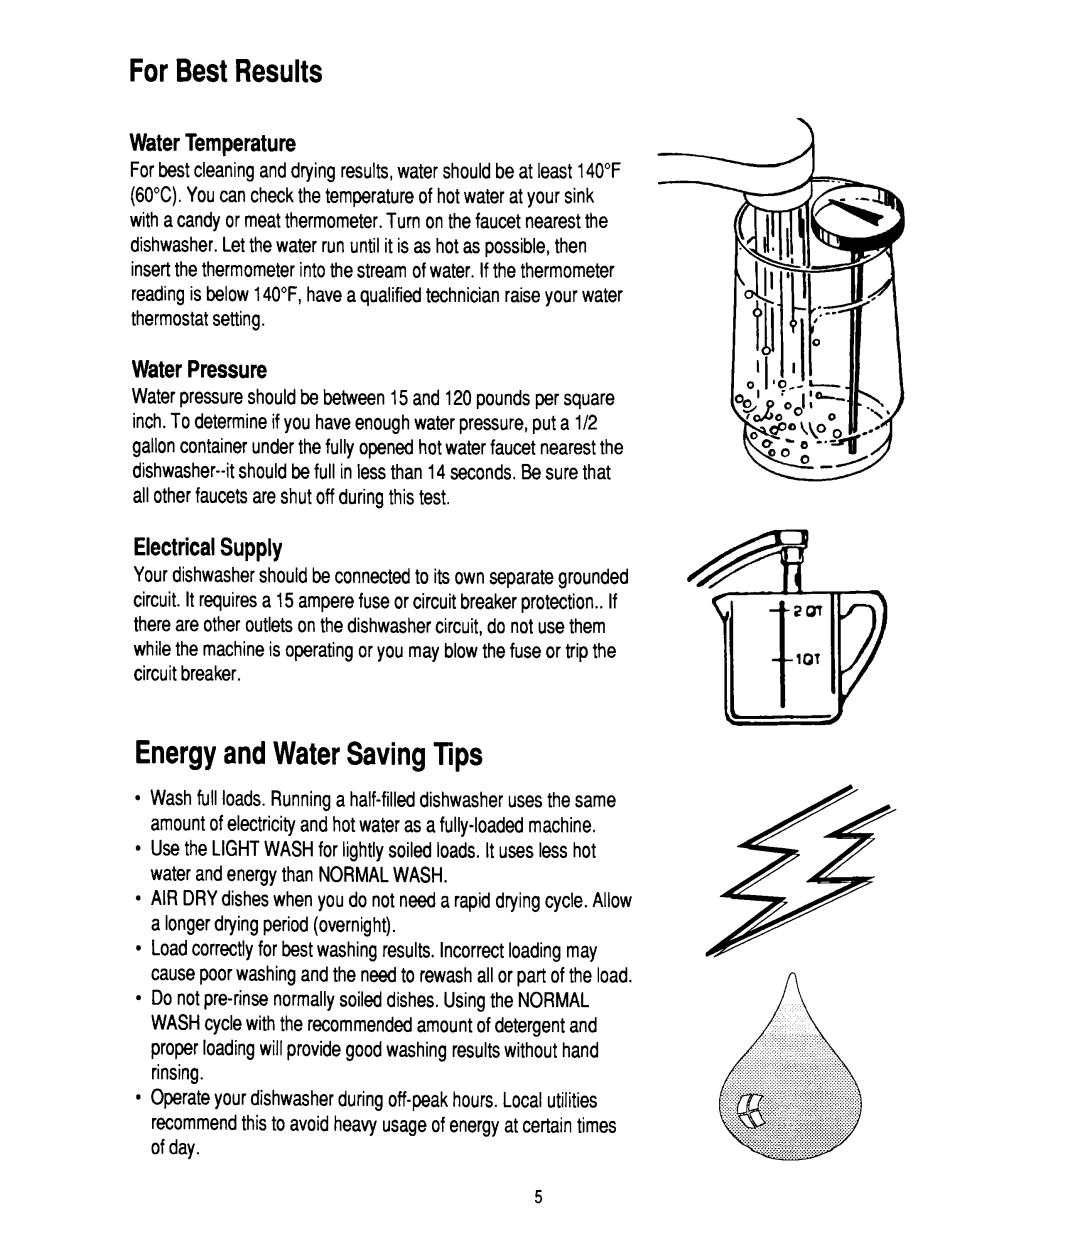 Whirlpool W10142816B manual ForBestResults, EnergyandWaterSavingTips, WaterTemperature, WaterPressure, ElectricalSupply 